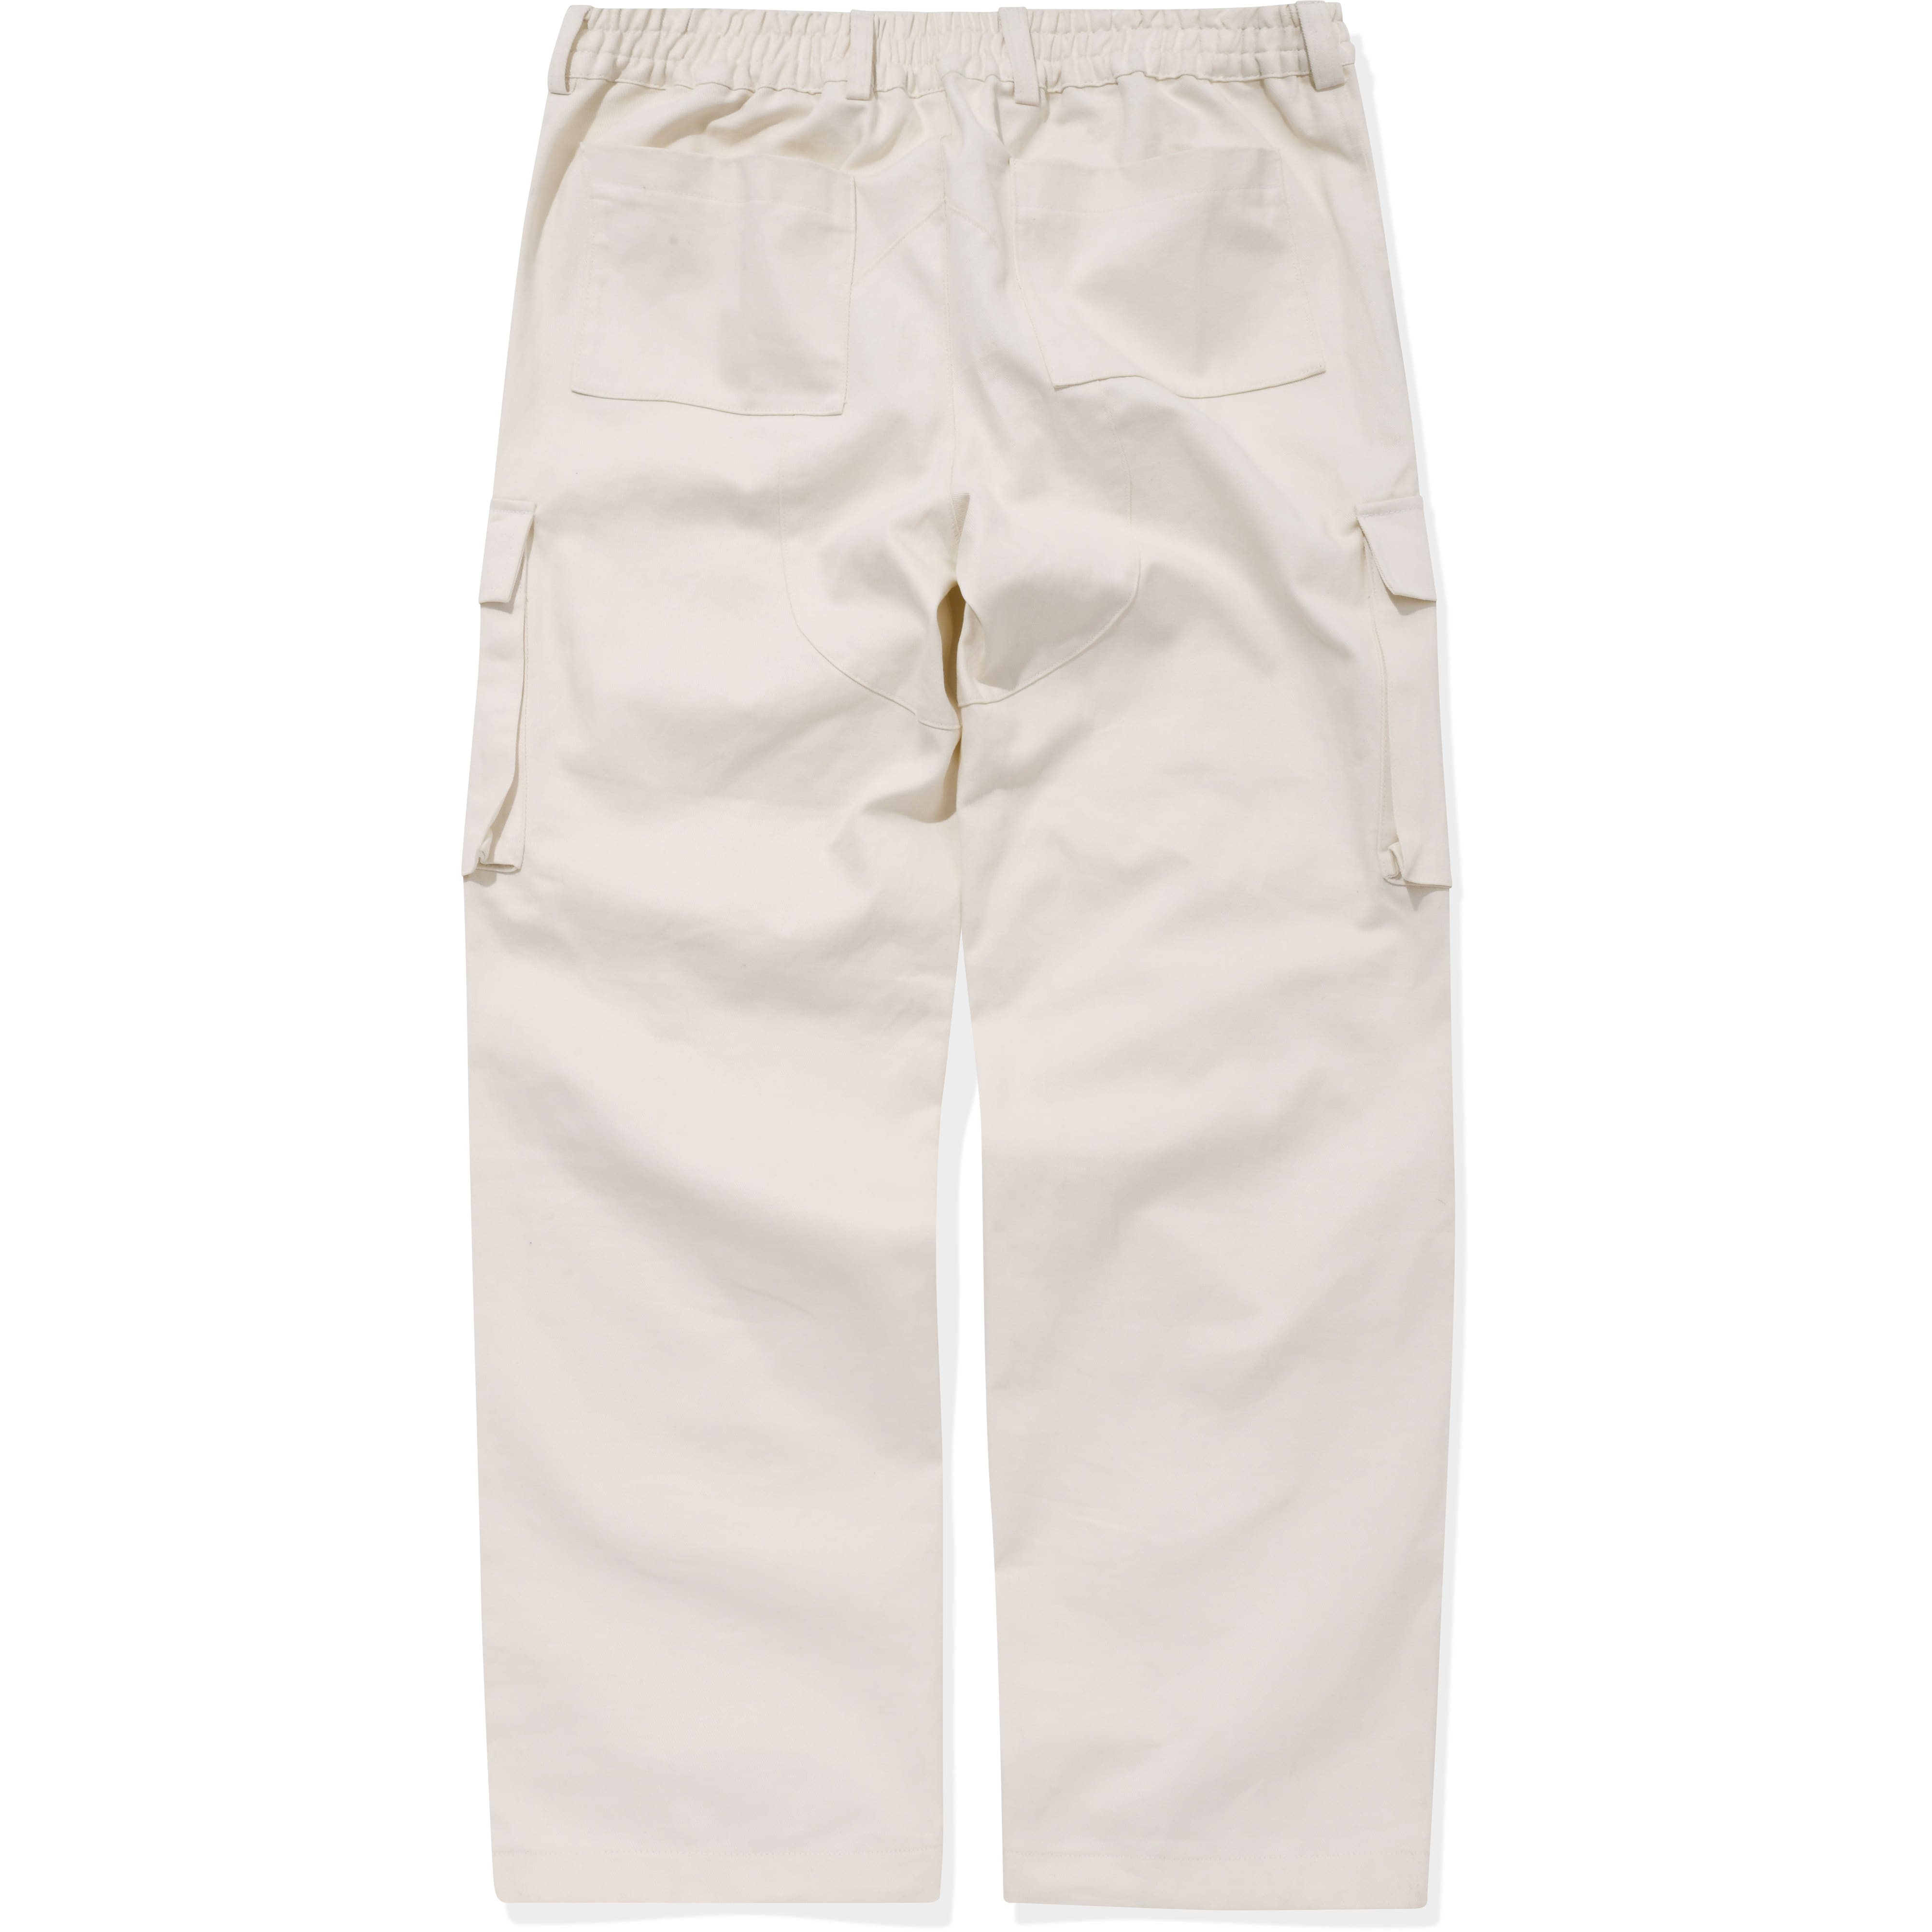 Cargo Pocket Pants Cream,NOT4NERD